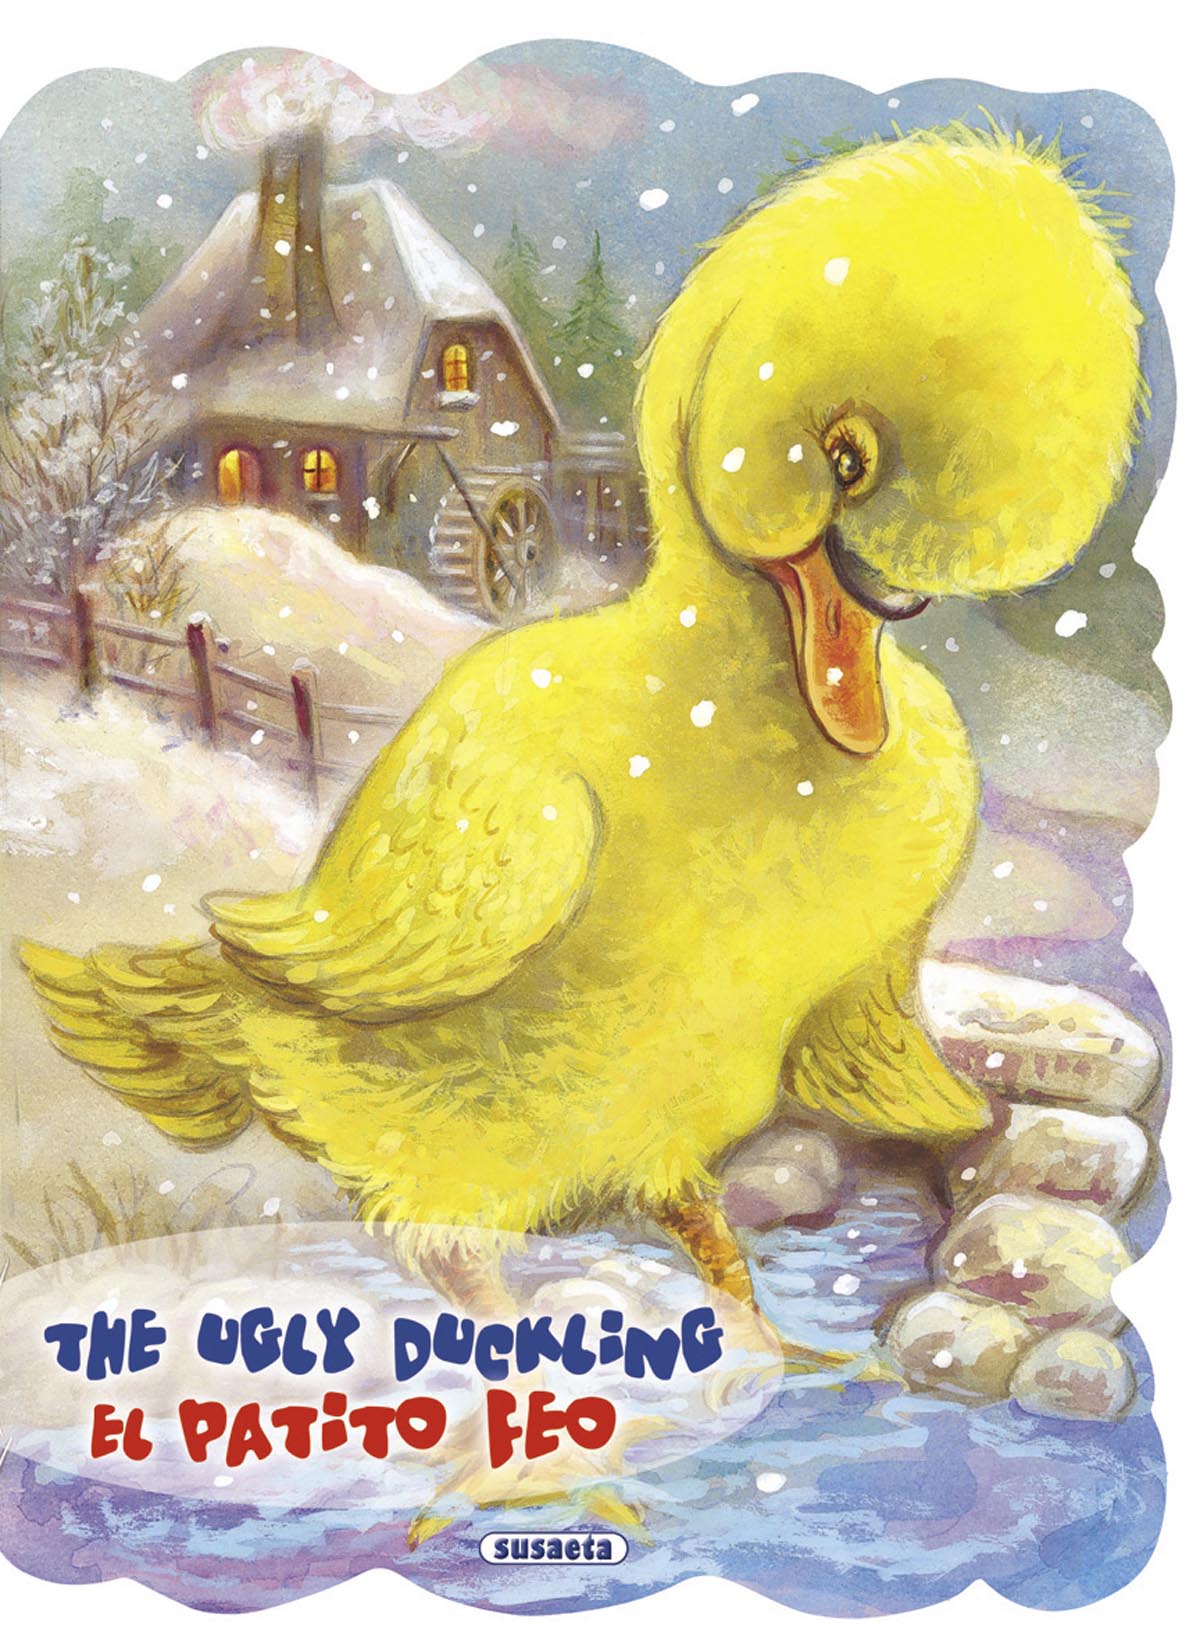 The ugly duckling - El patito feo